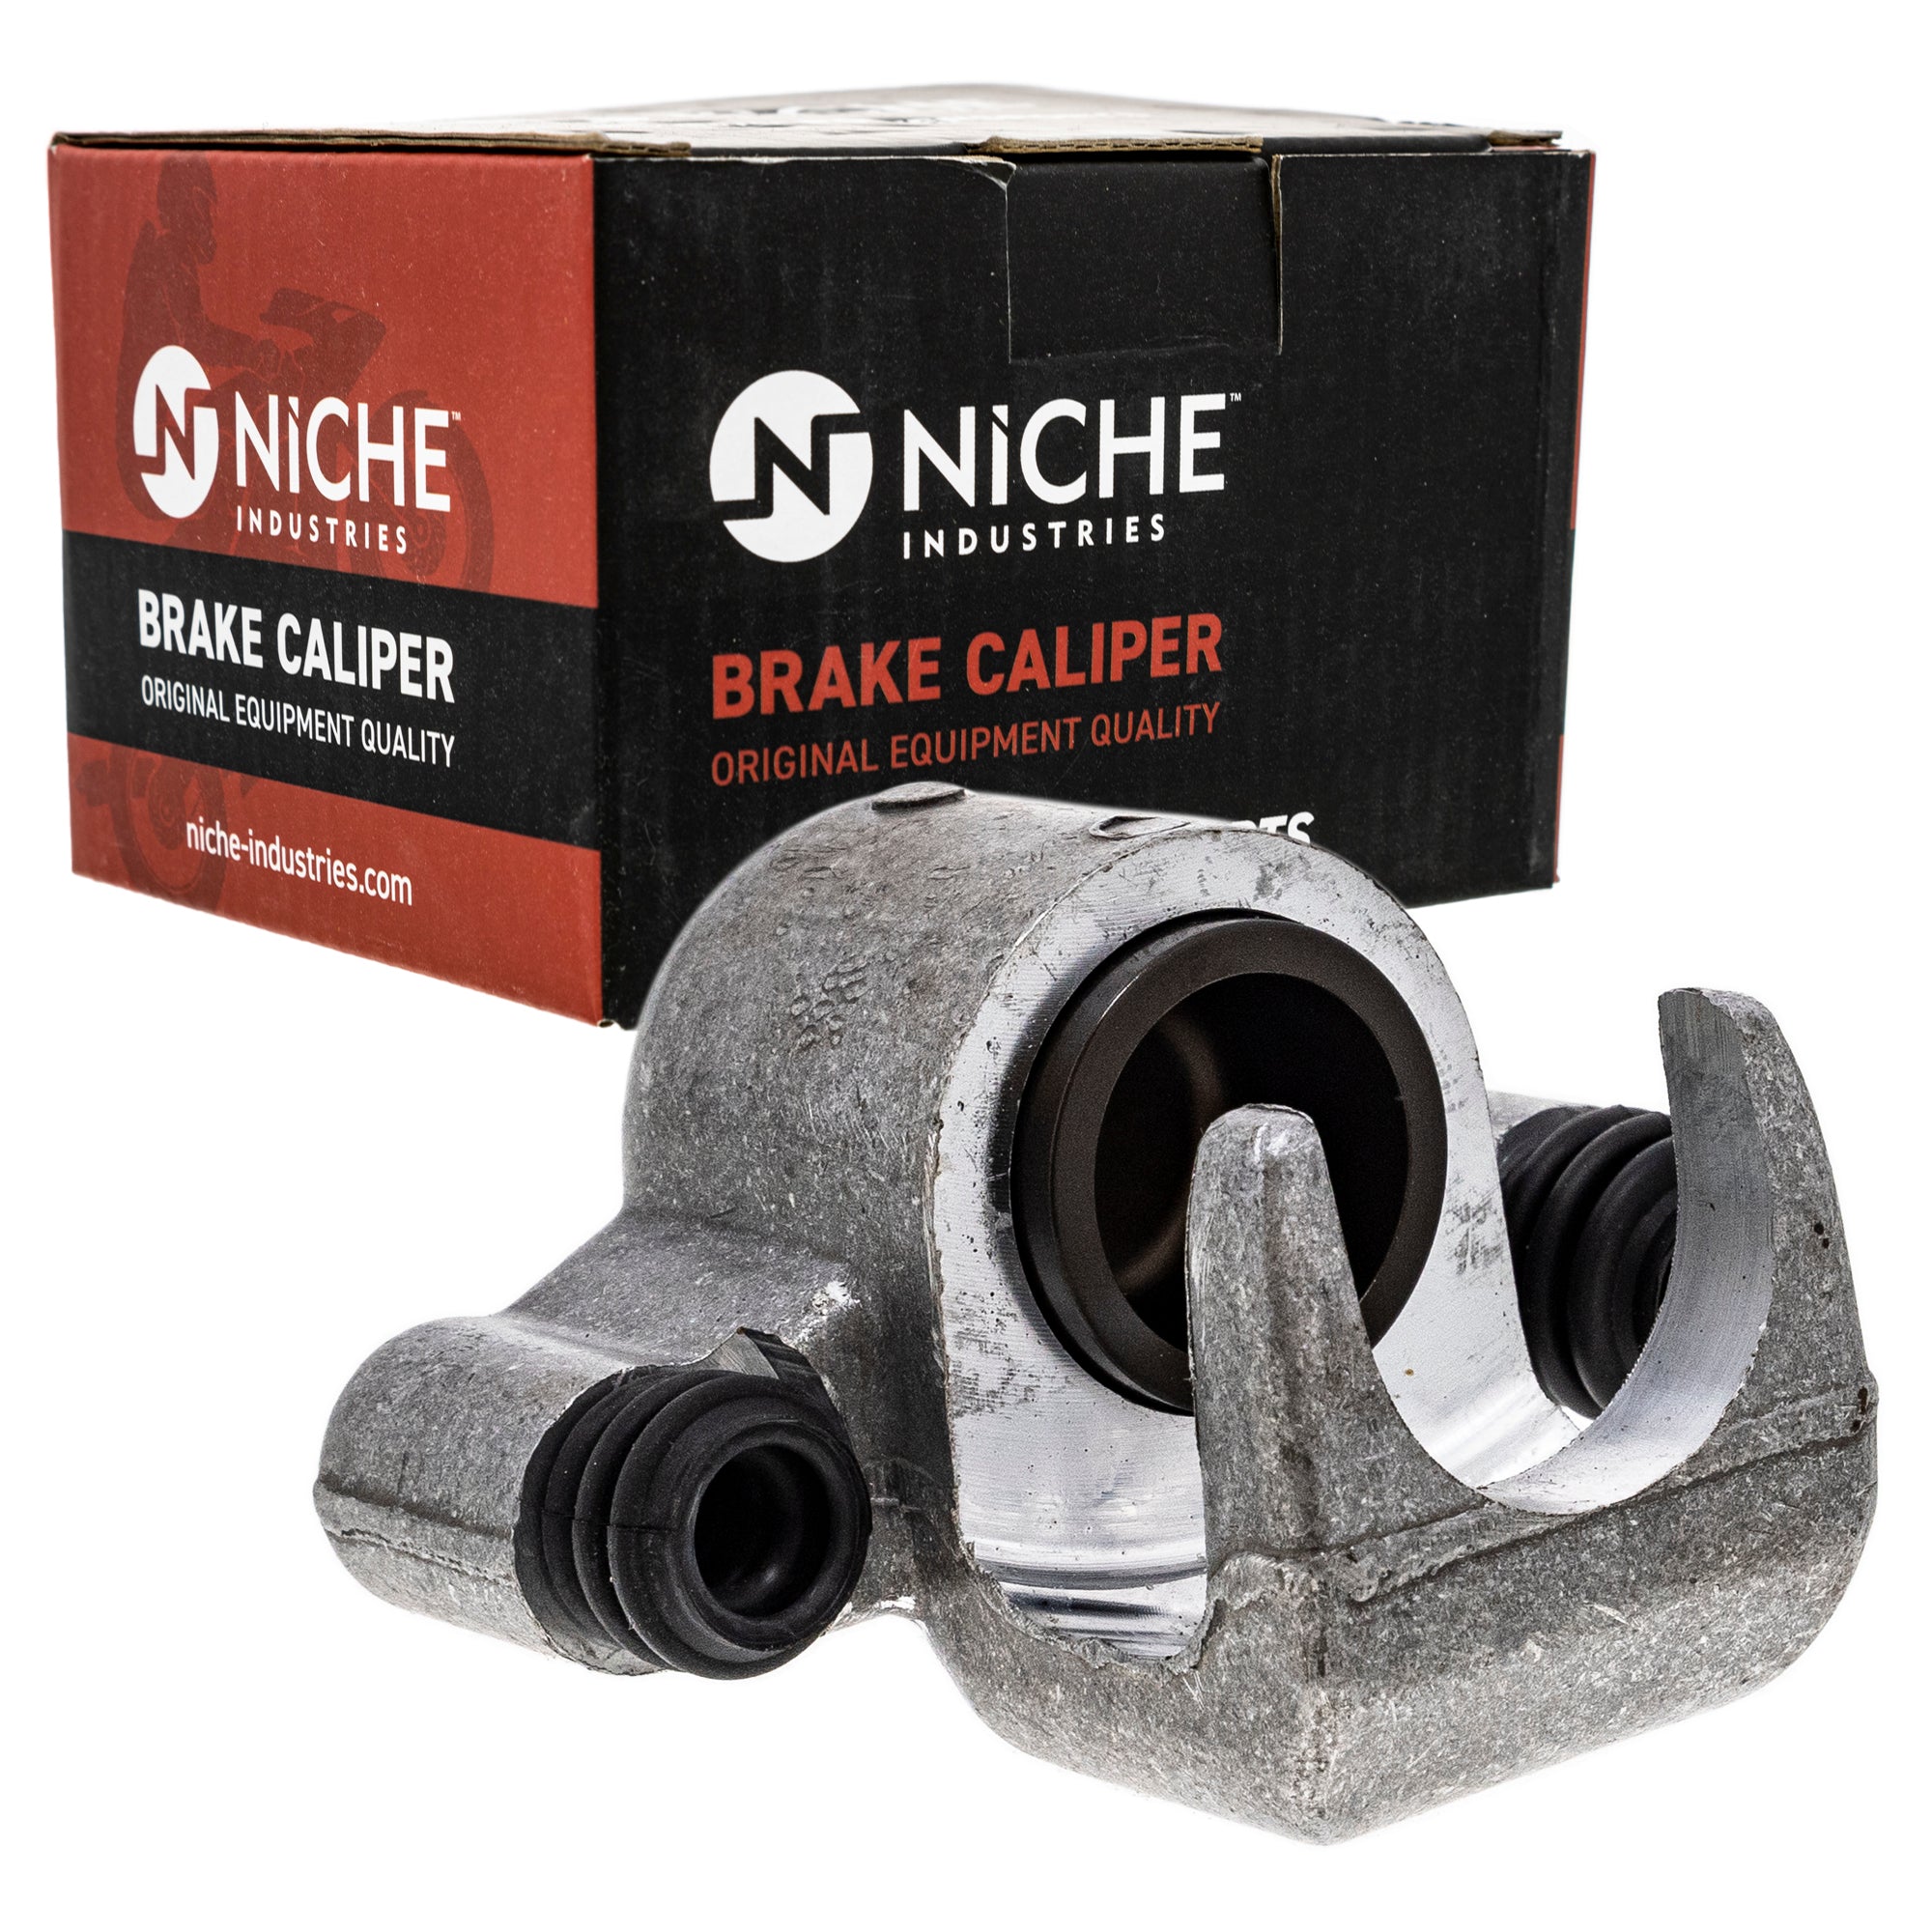 NICHE MK1001028 Brake Caliper Kit